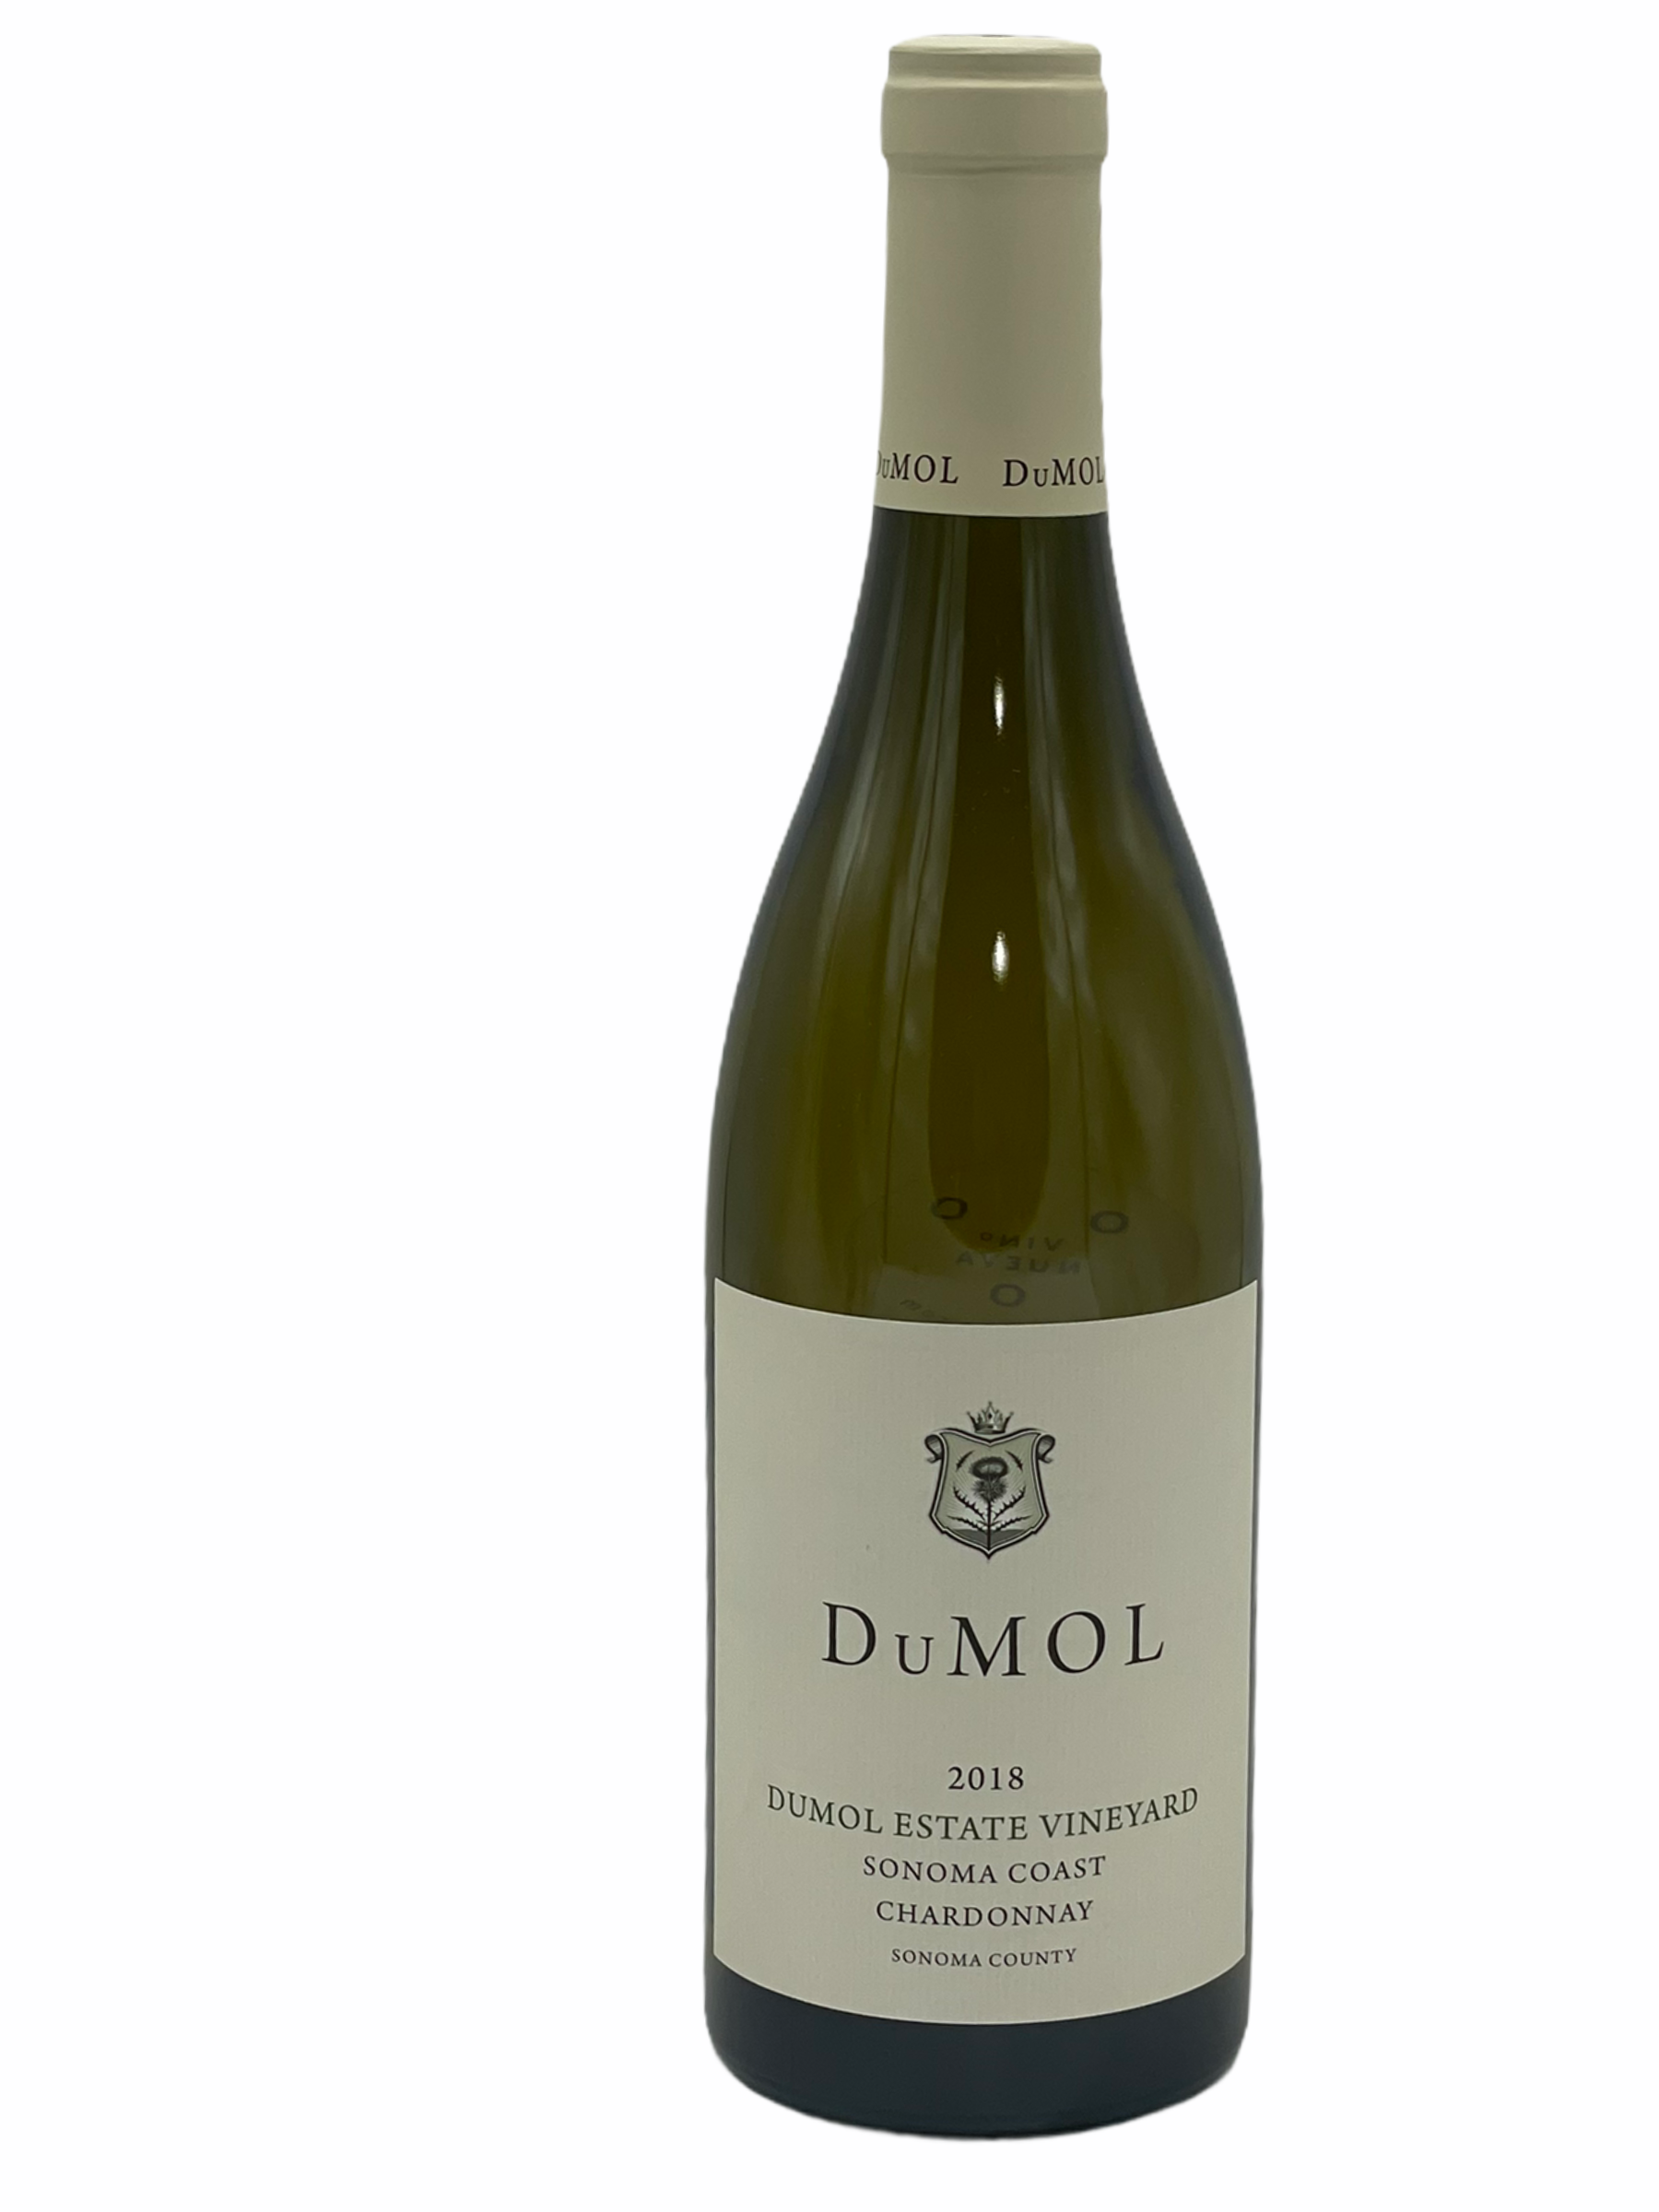 DuMOL - Sonoma Coast Chardonnay 'Dumol Estate Vineyard' 2018 - VinoNueva Fine & Rare Wines